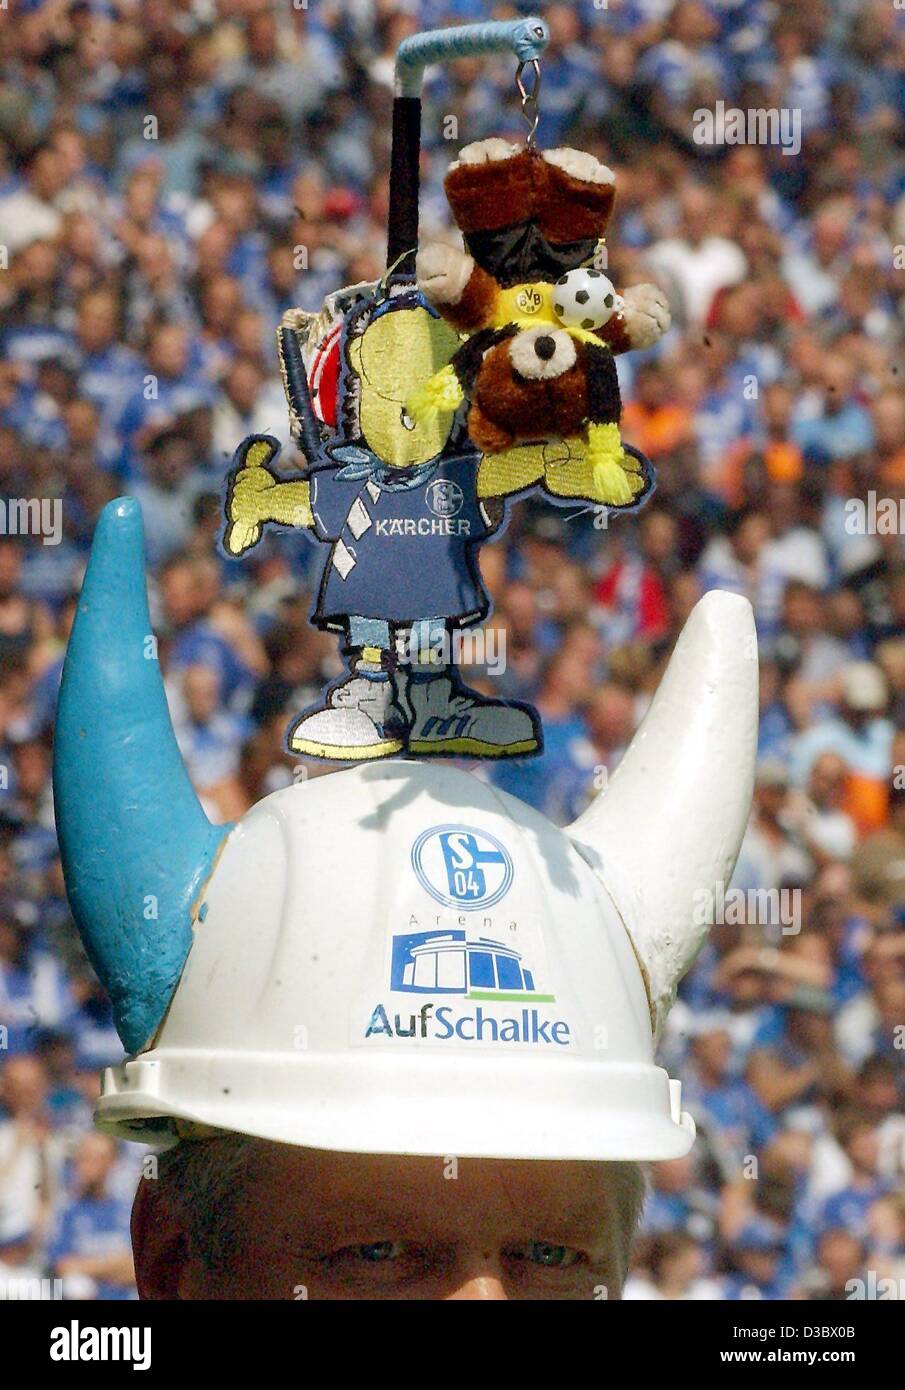 (Afp) - un fan de la German soccer club Schalke 04 porte une coiffure inhabituelle, montrant un ours vêtus aux couleurs du club rival Borussia Dortmund accroché à une potence et un heureux Schake teddy monté sur un casque de sécurité, lors d'un match de Bundesliga contre Schalke 04 Borussia Dortmund et à l'al. Banque D'Images